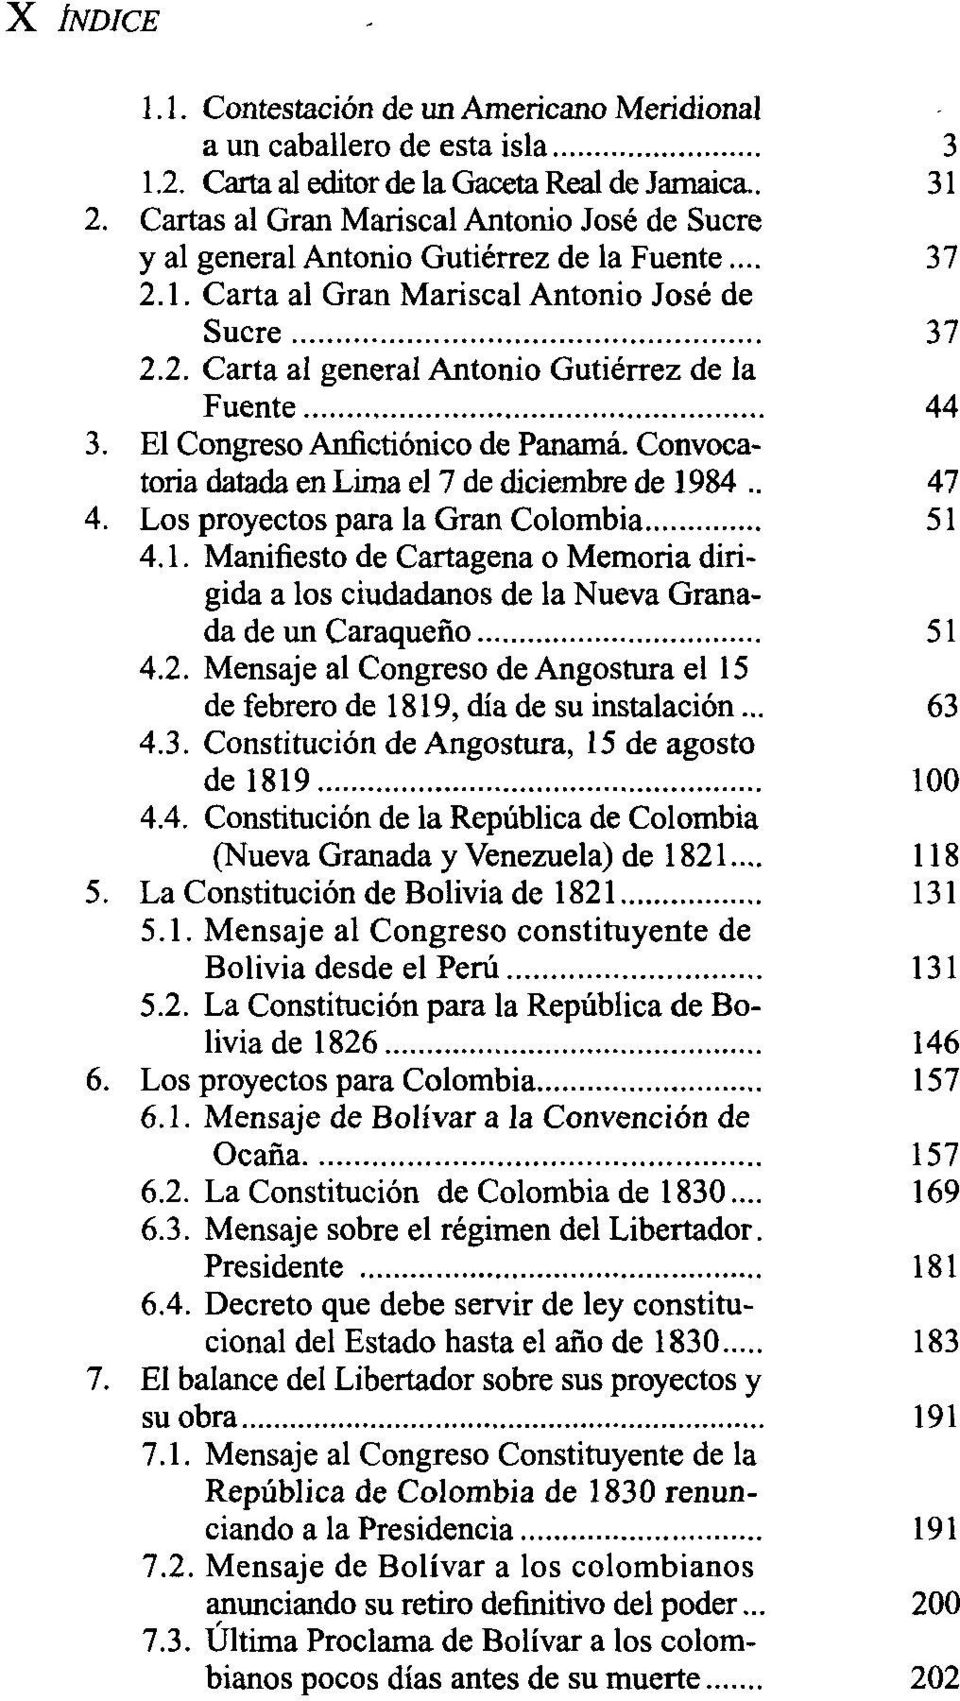 El Congreso Anfictiónico de Panamá. Convocatoria datada en Lima el 7 de diciembre de 1984.. 47 4. Los proyectos para la Gran Colombia 51 4.1. Manifiesto de Cartagena o Memoria dirigida a los ciudadanos de la Nueva Granada de un Caraqueño 51 4.